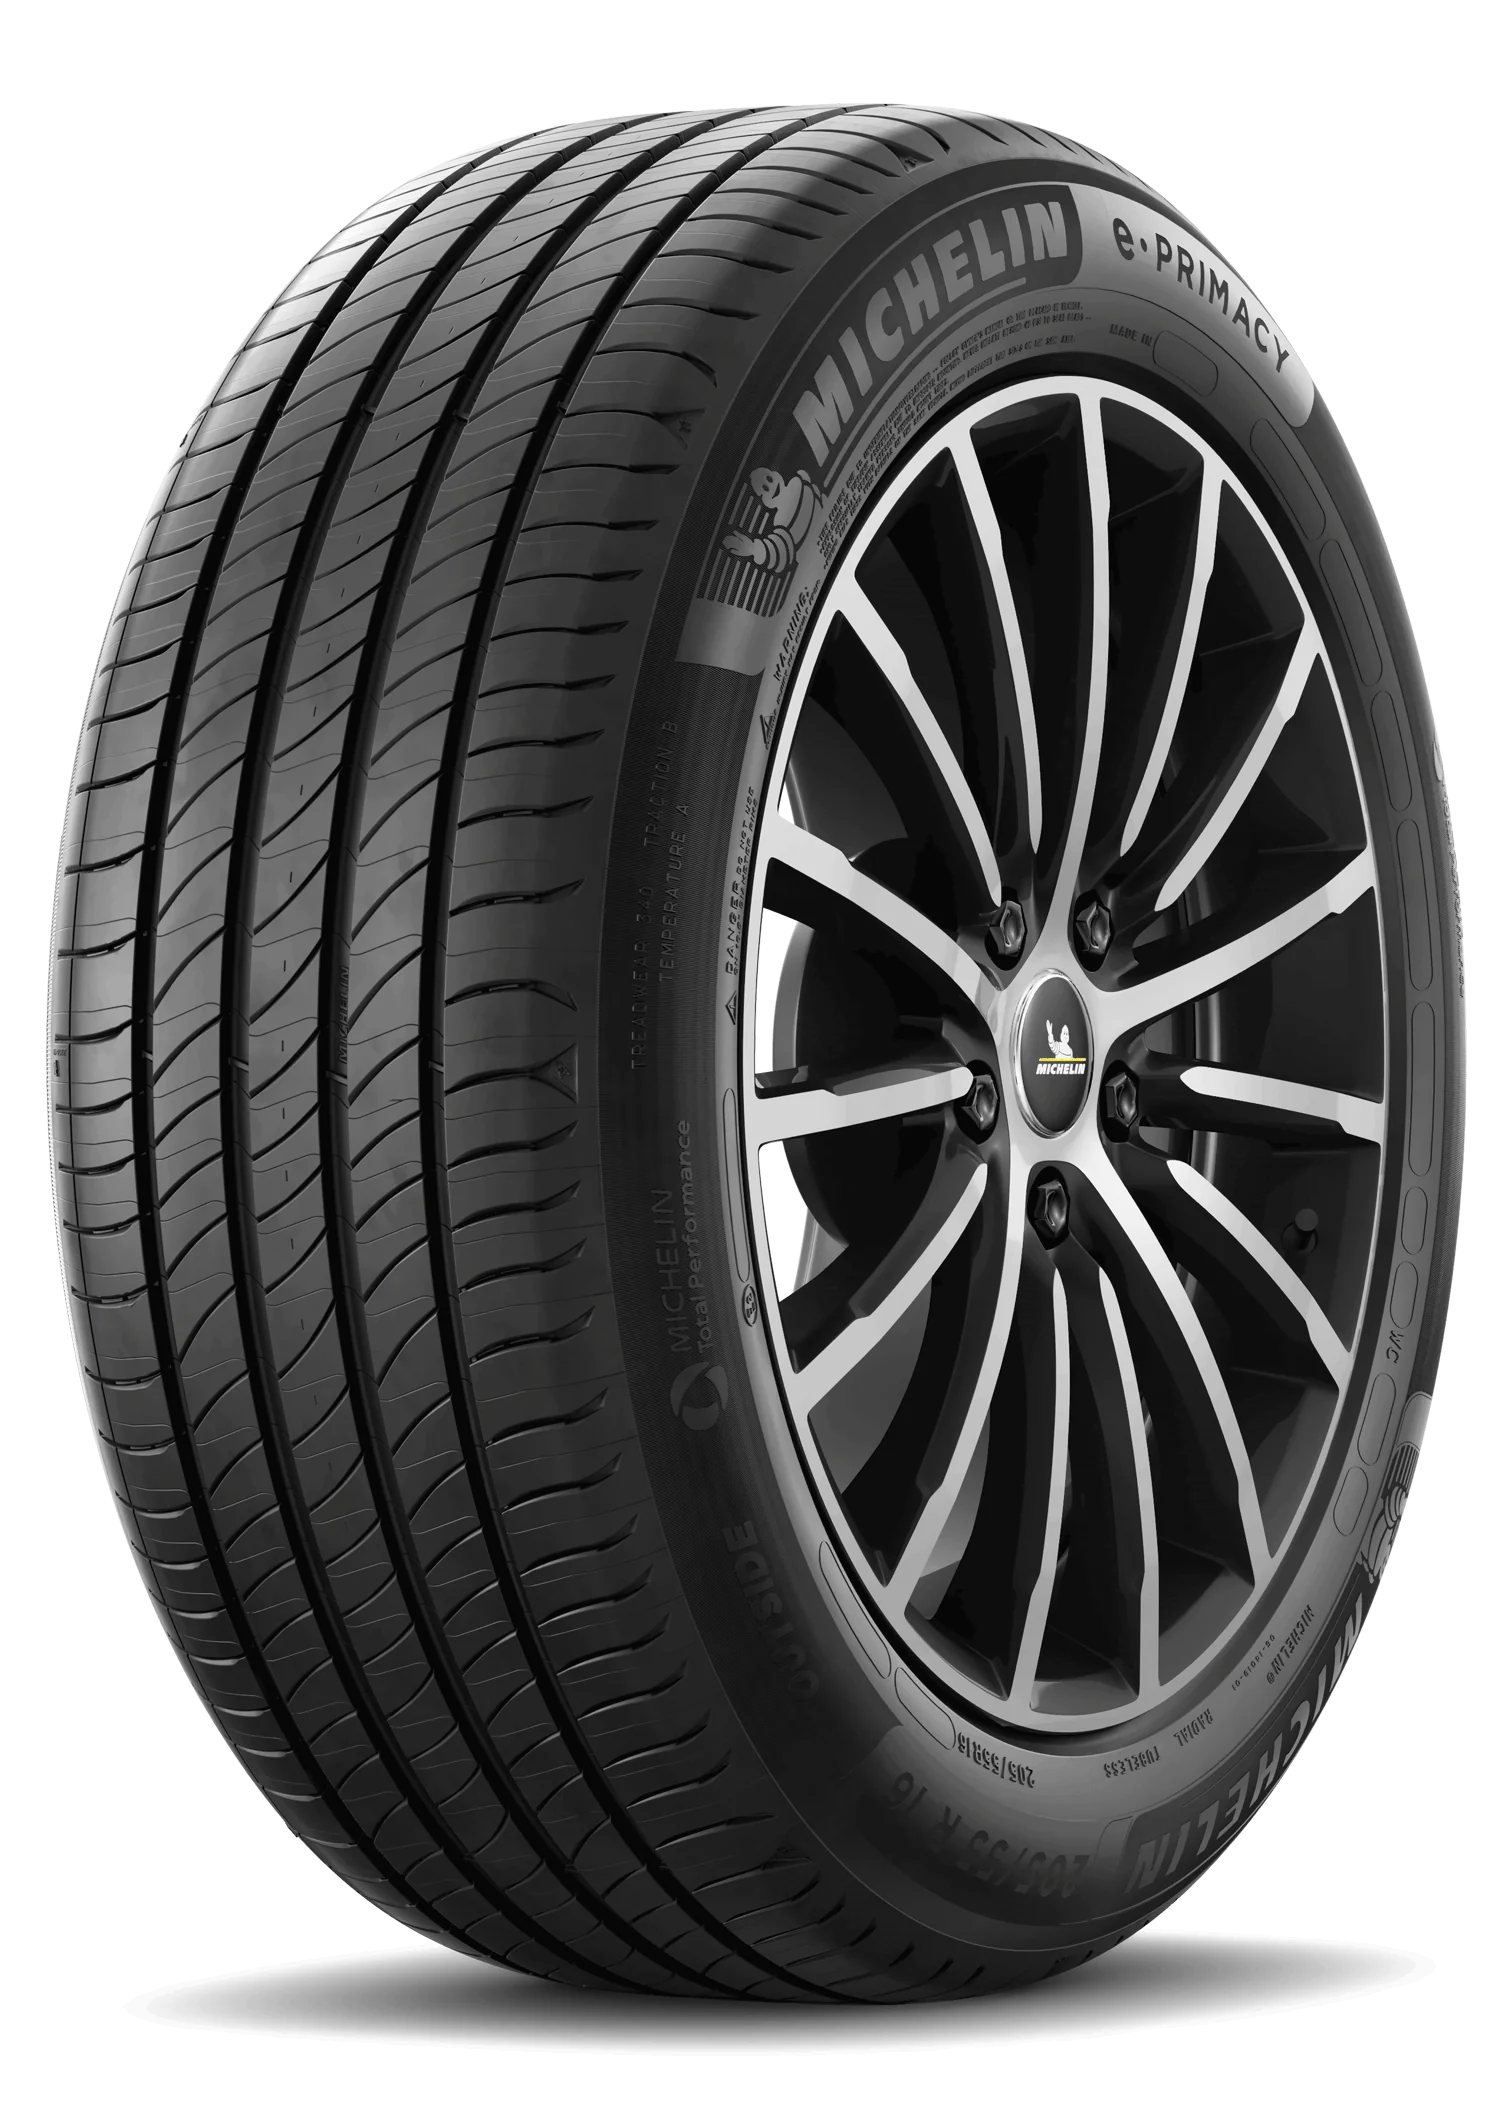 Michelin Michelin 215/50 R19 93T E PRIMACY pneumatici nuovi Estivo 